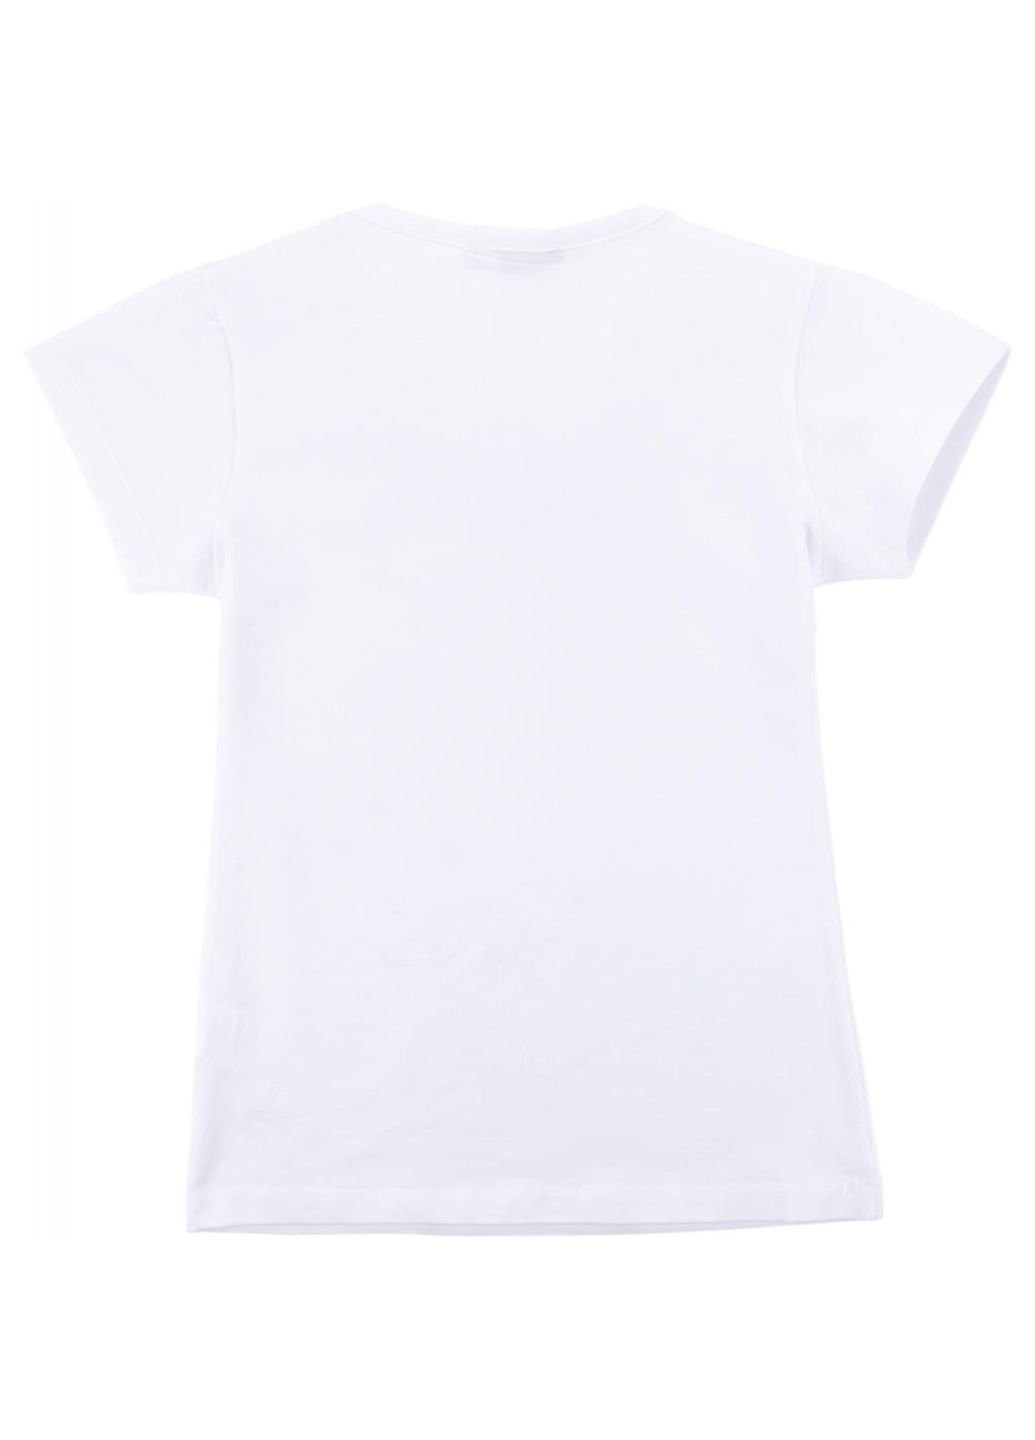 Белая демисезонная футболка детская с коротким рукавом и кружевной оборкой (7134-164g-white) Matilda